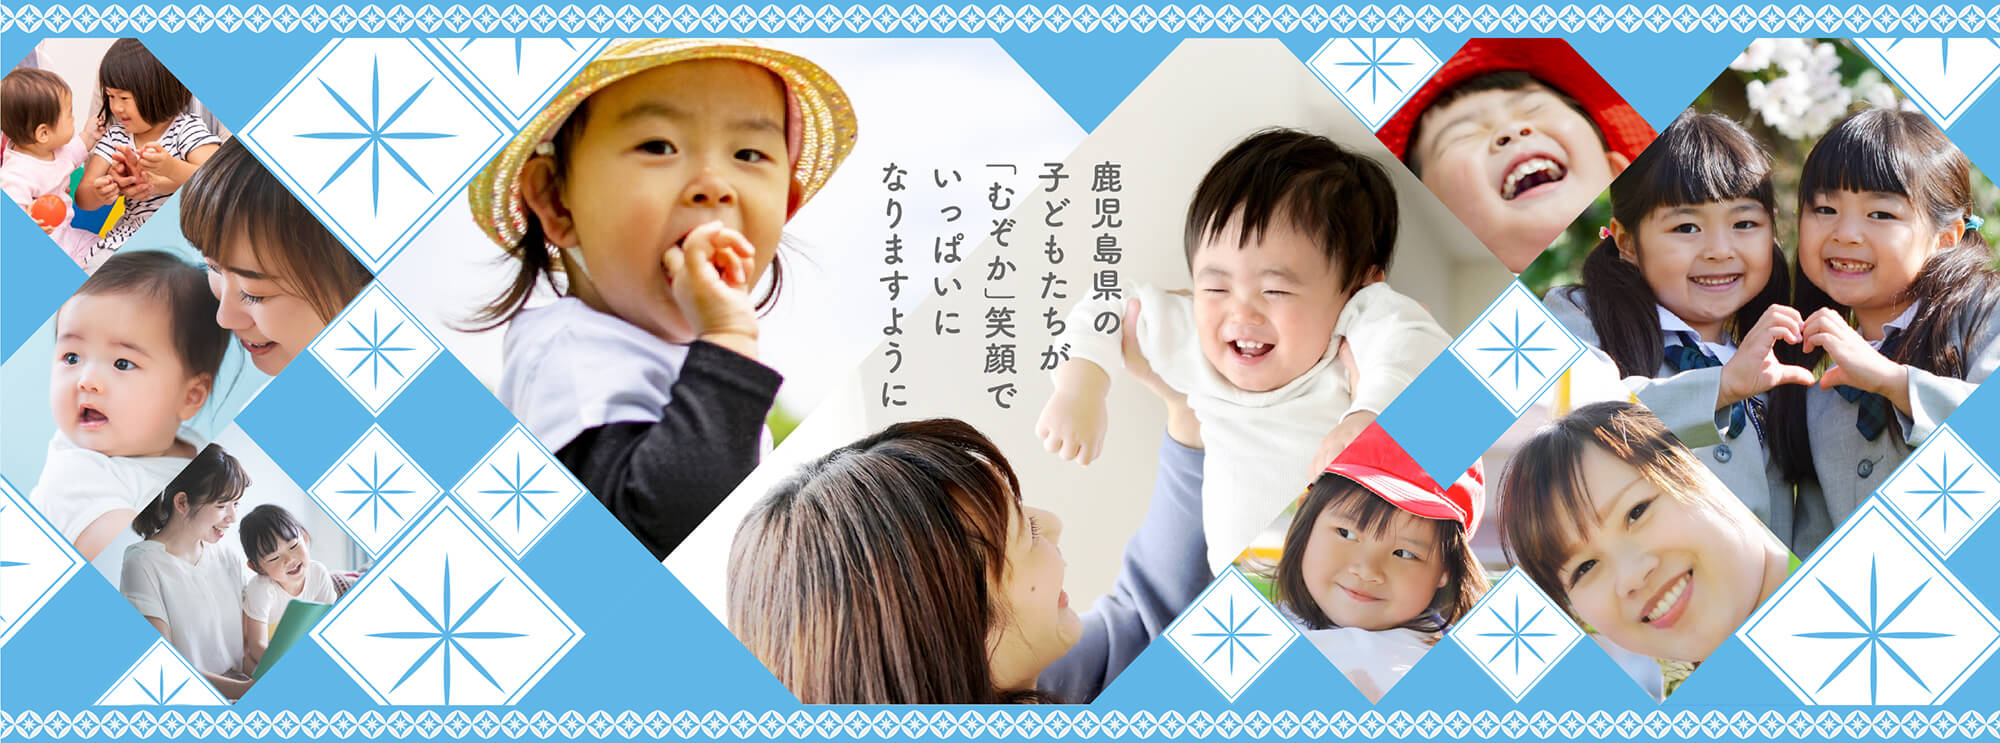 なりますようにいっぱいに「むぞか」笑顔で子どもたちが鹿児島県の